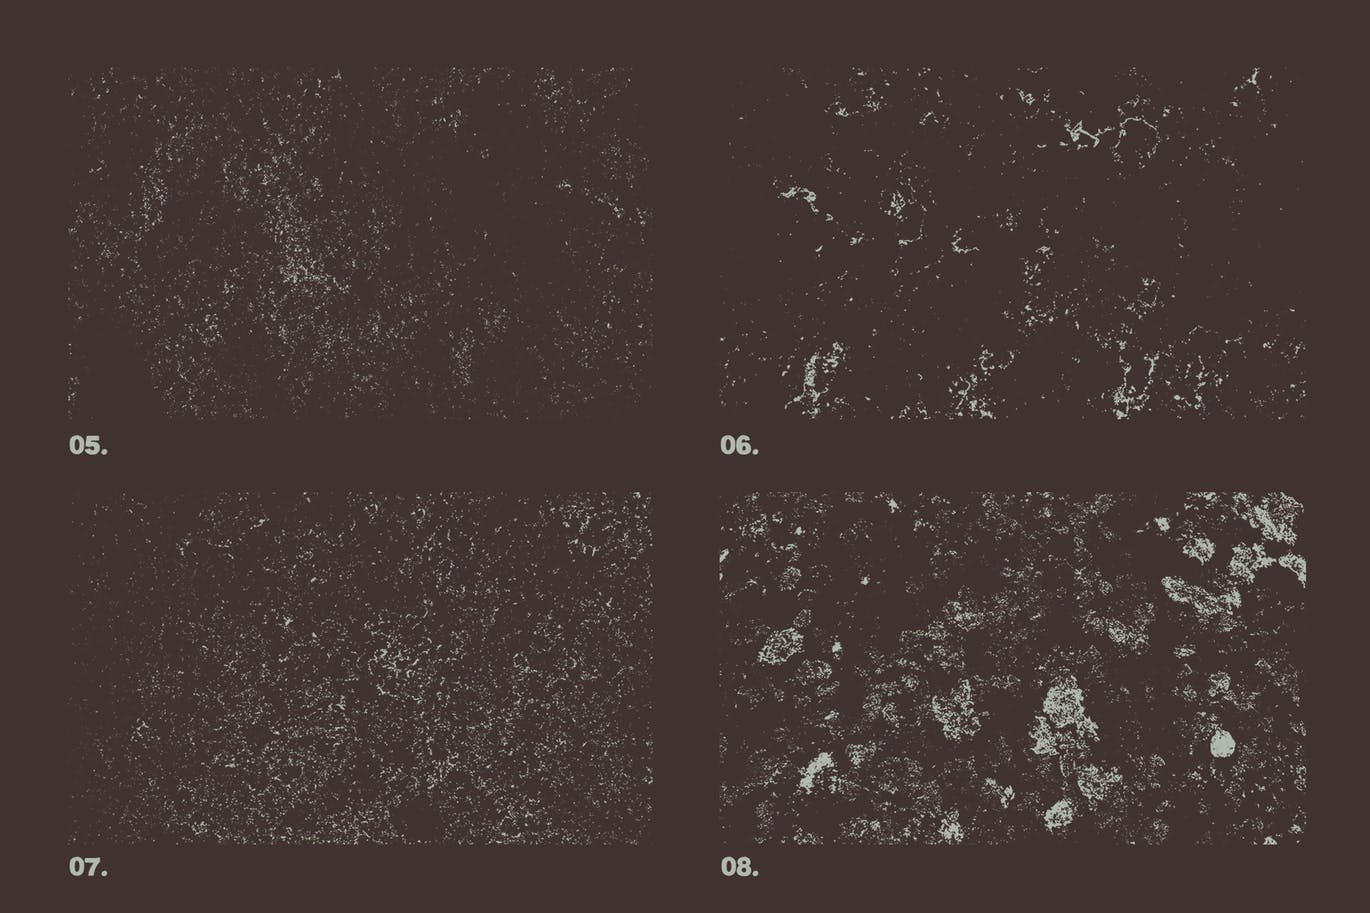 12款大理石纹理矢量背景素材 Vector Marble Textures x12插图1